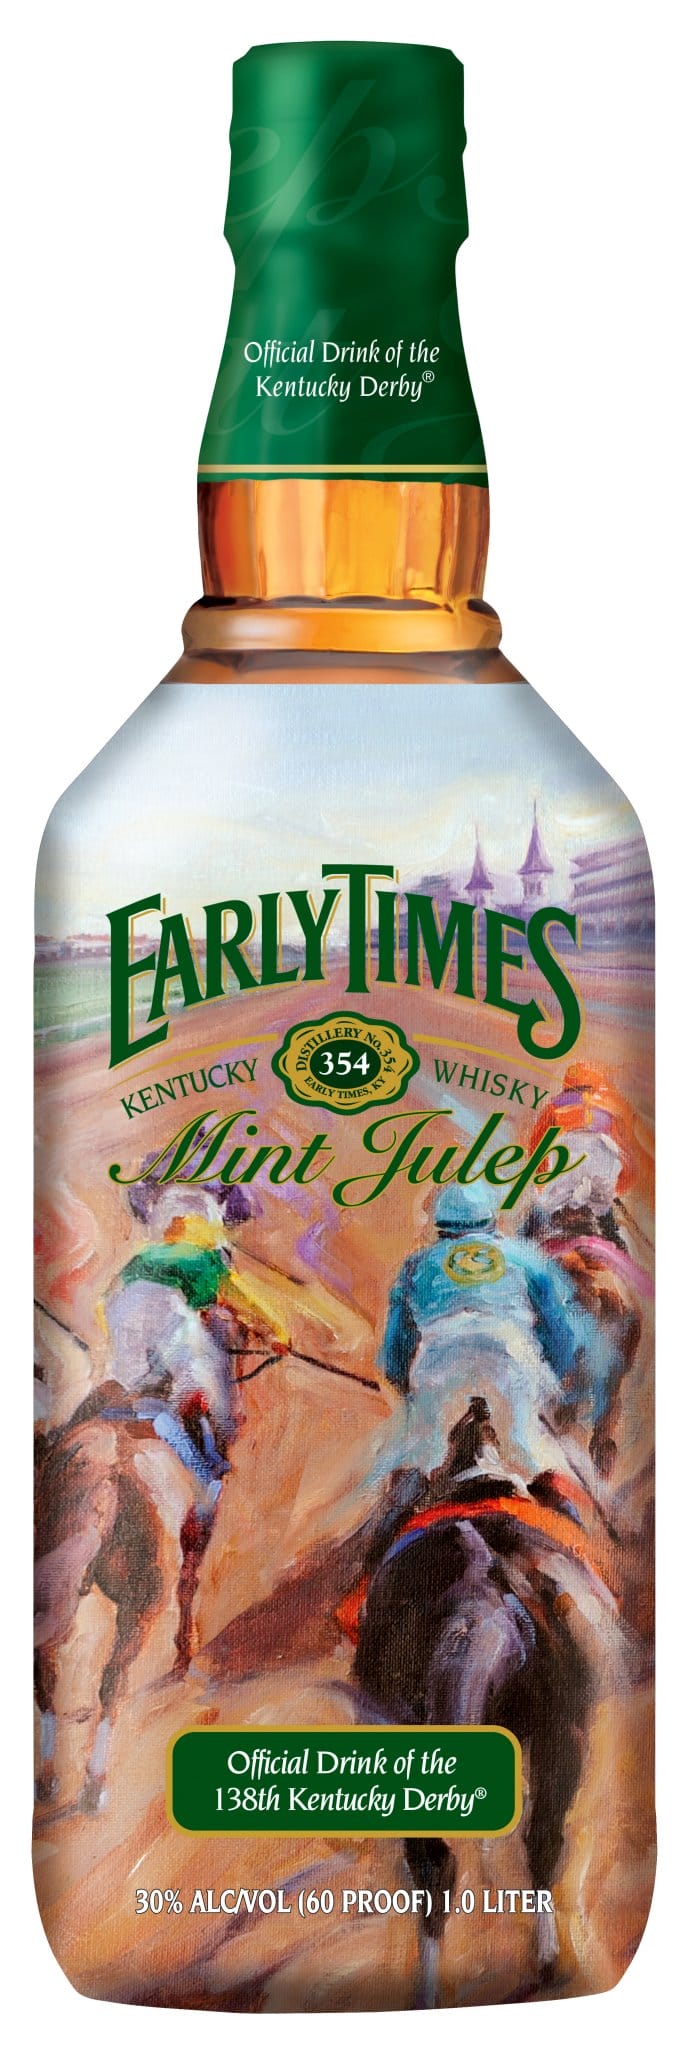 Early Times Mint Julep BOttle 2012 Kentucky Derby 138